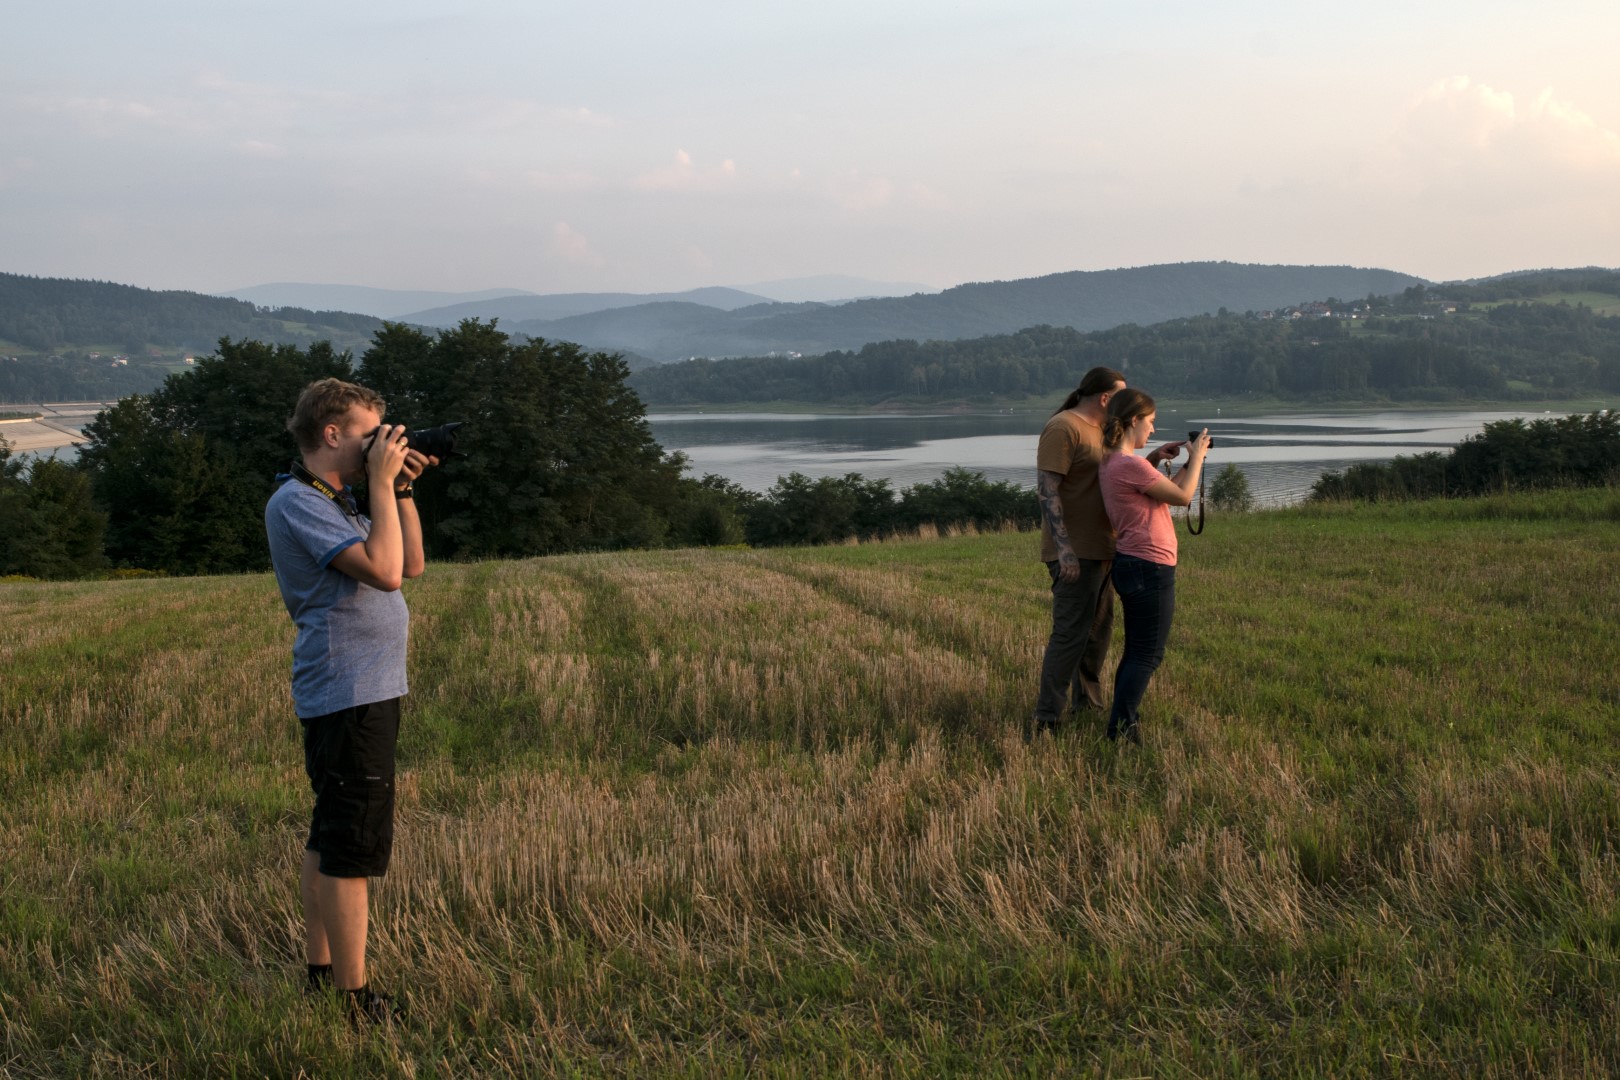 Dwoje uczestników warsztatów fotograficznych wraz z instruktorem fotografem stoją z aparatami w rękach i fotografują przestrzeń przed sobą.